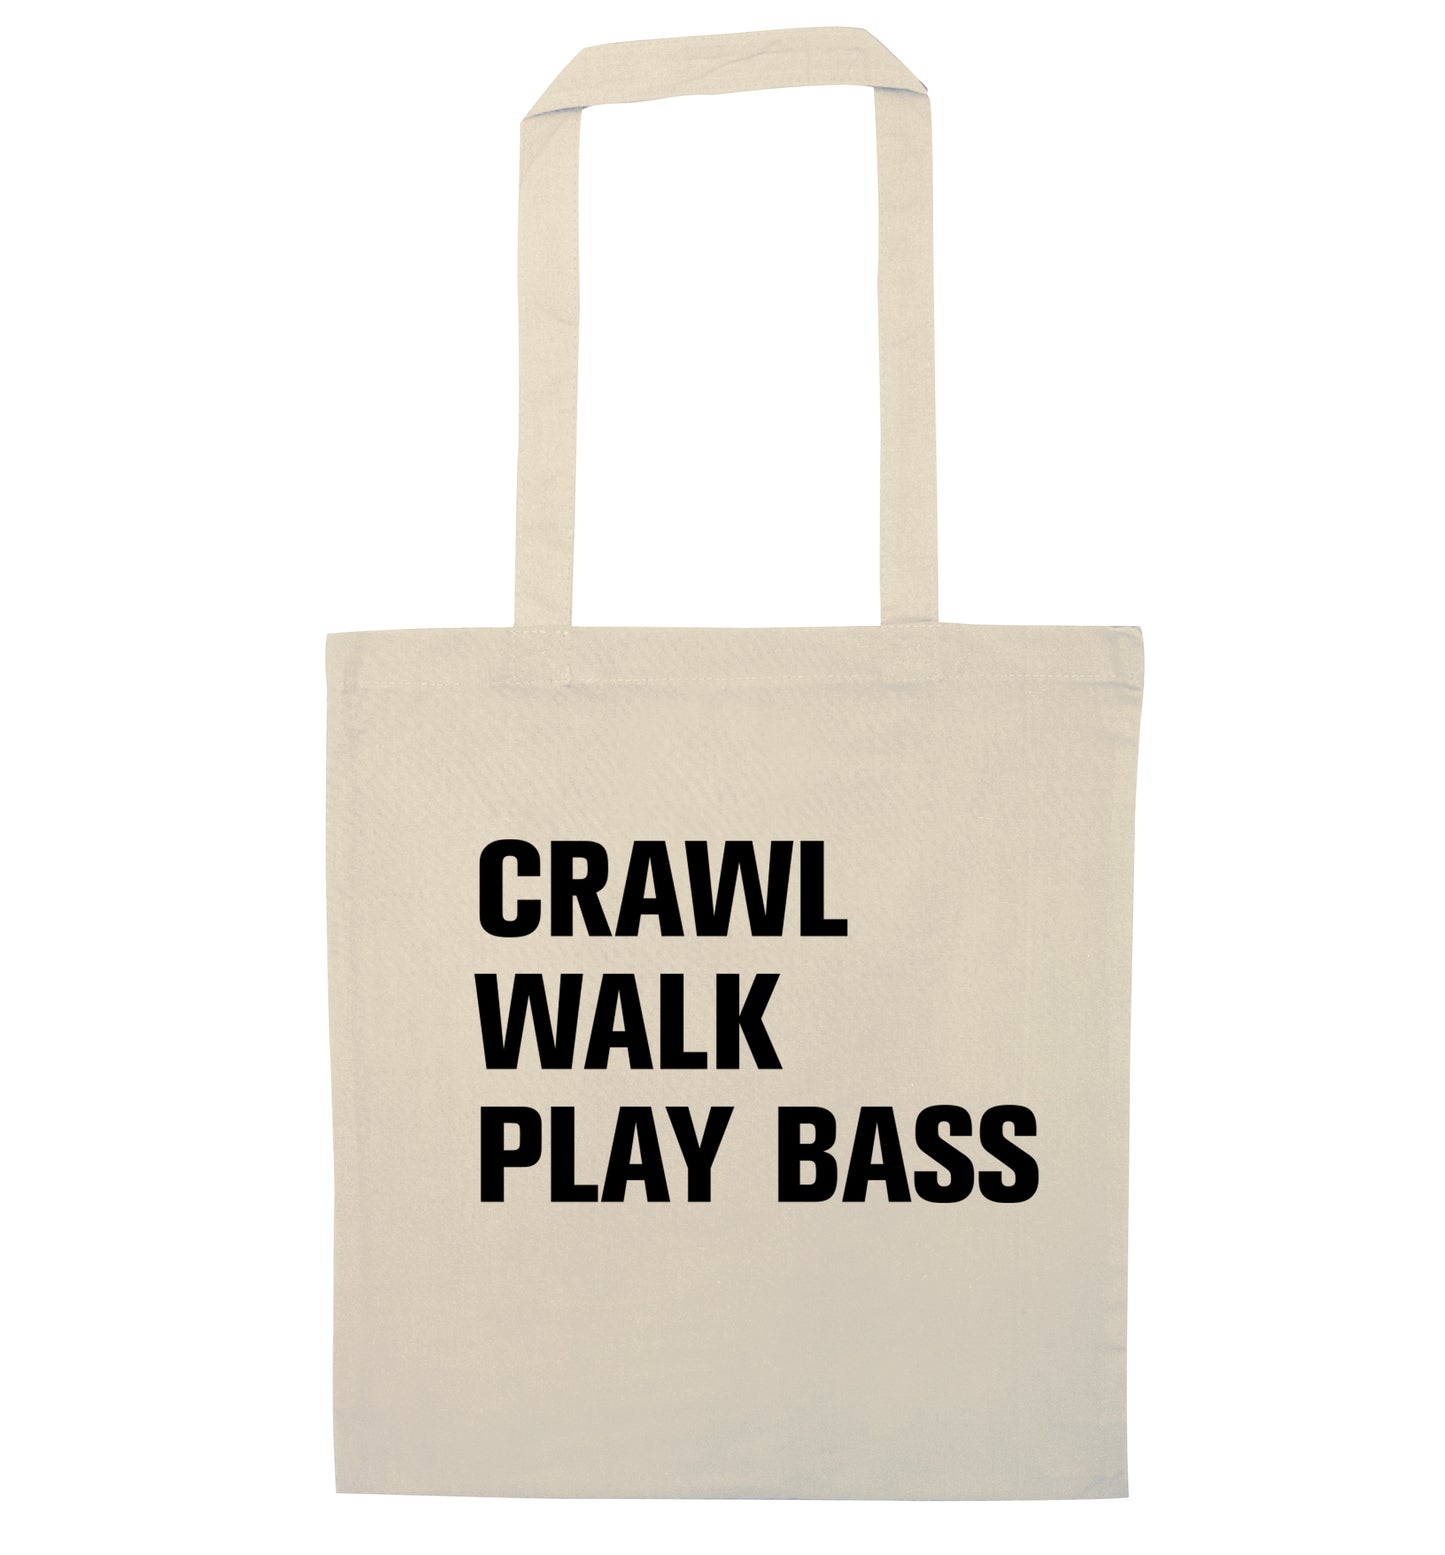 Crawl Walk Play Bass natural tote bag